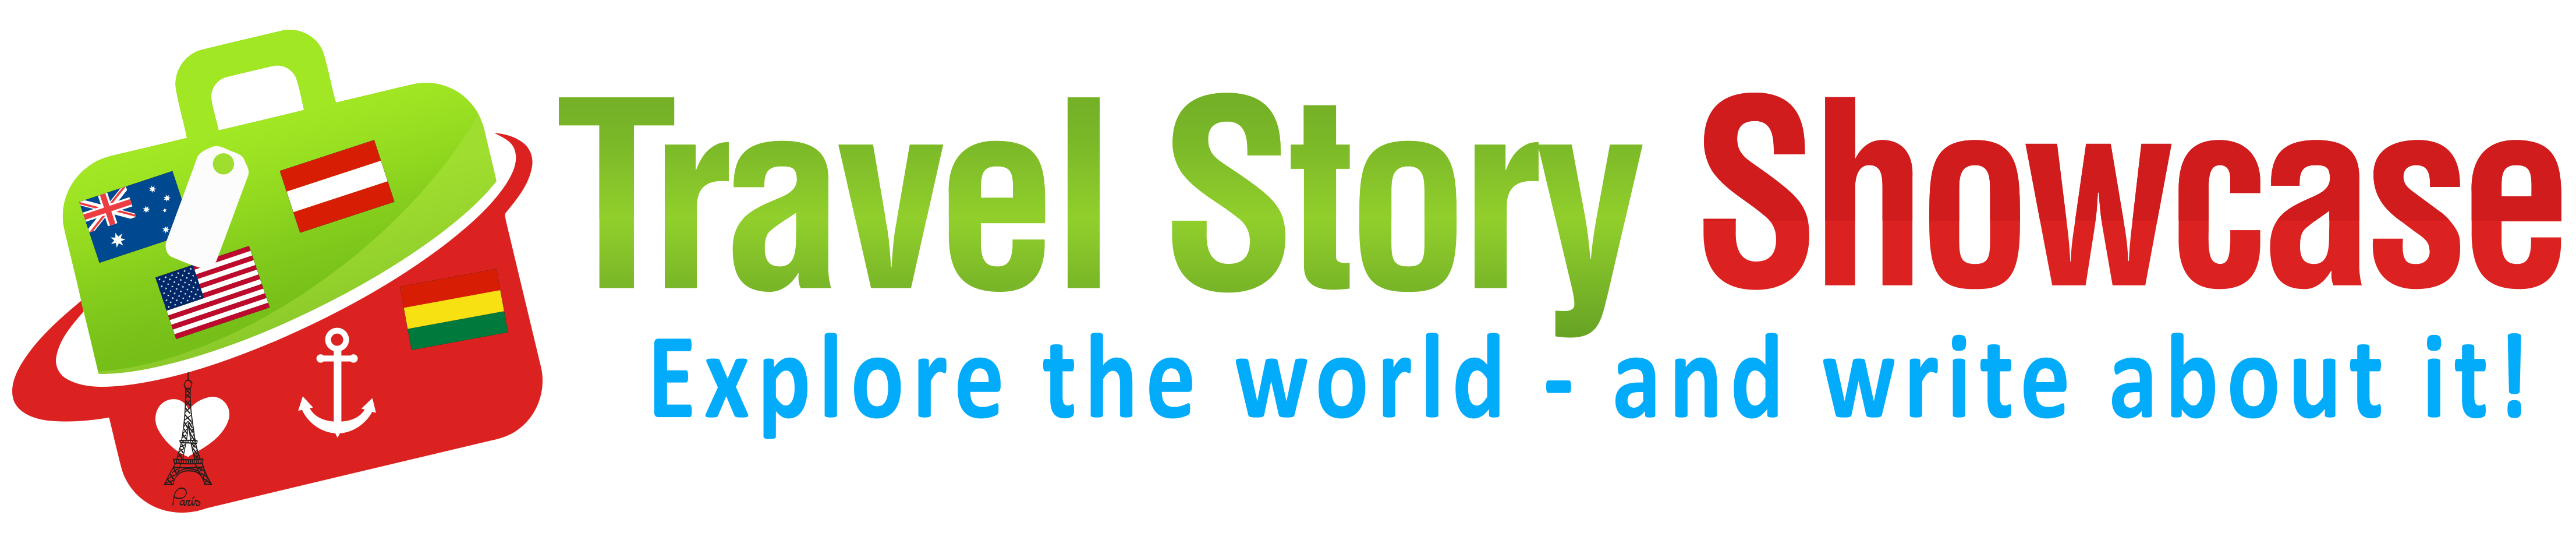 Travel Story Showcase